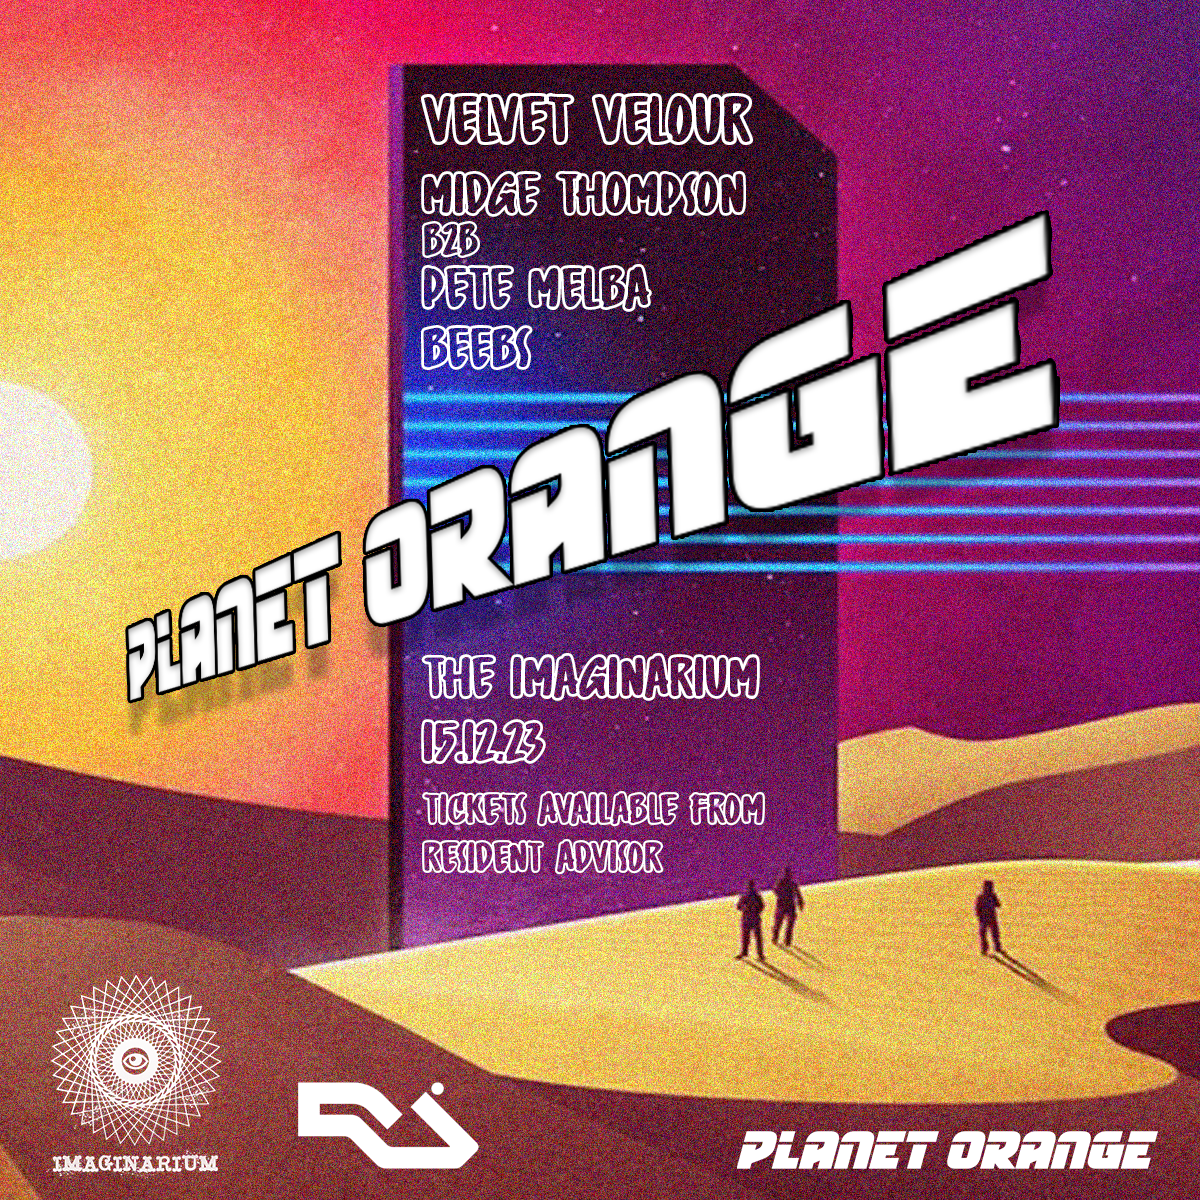 Planet Orange presents: Velvet Velour, Midge Thomson - Página frontal